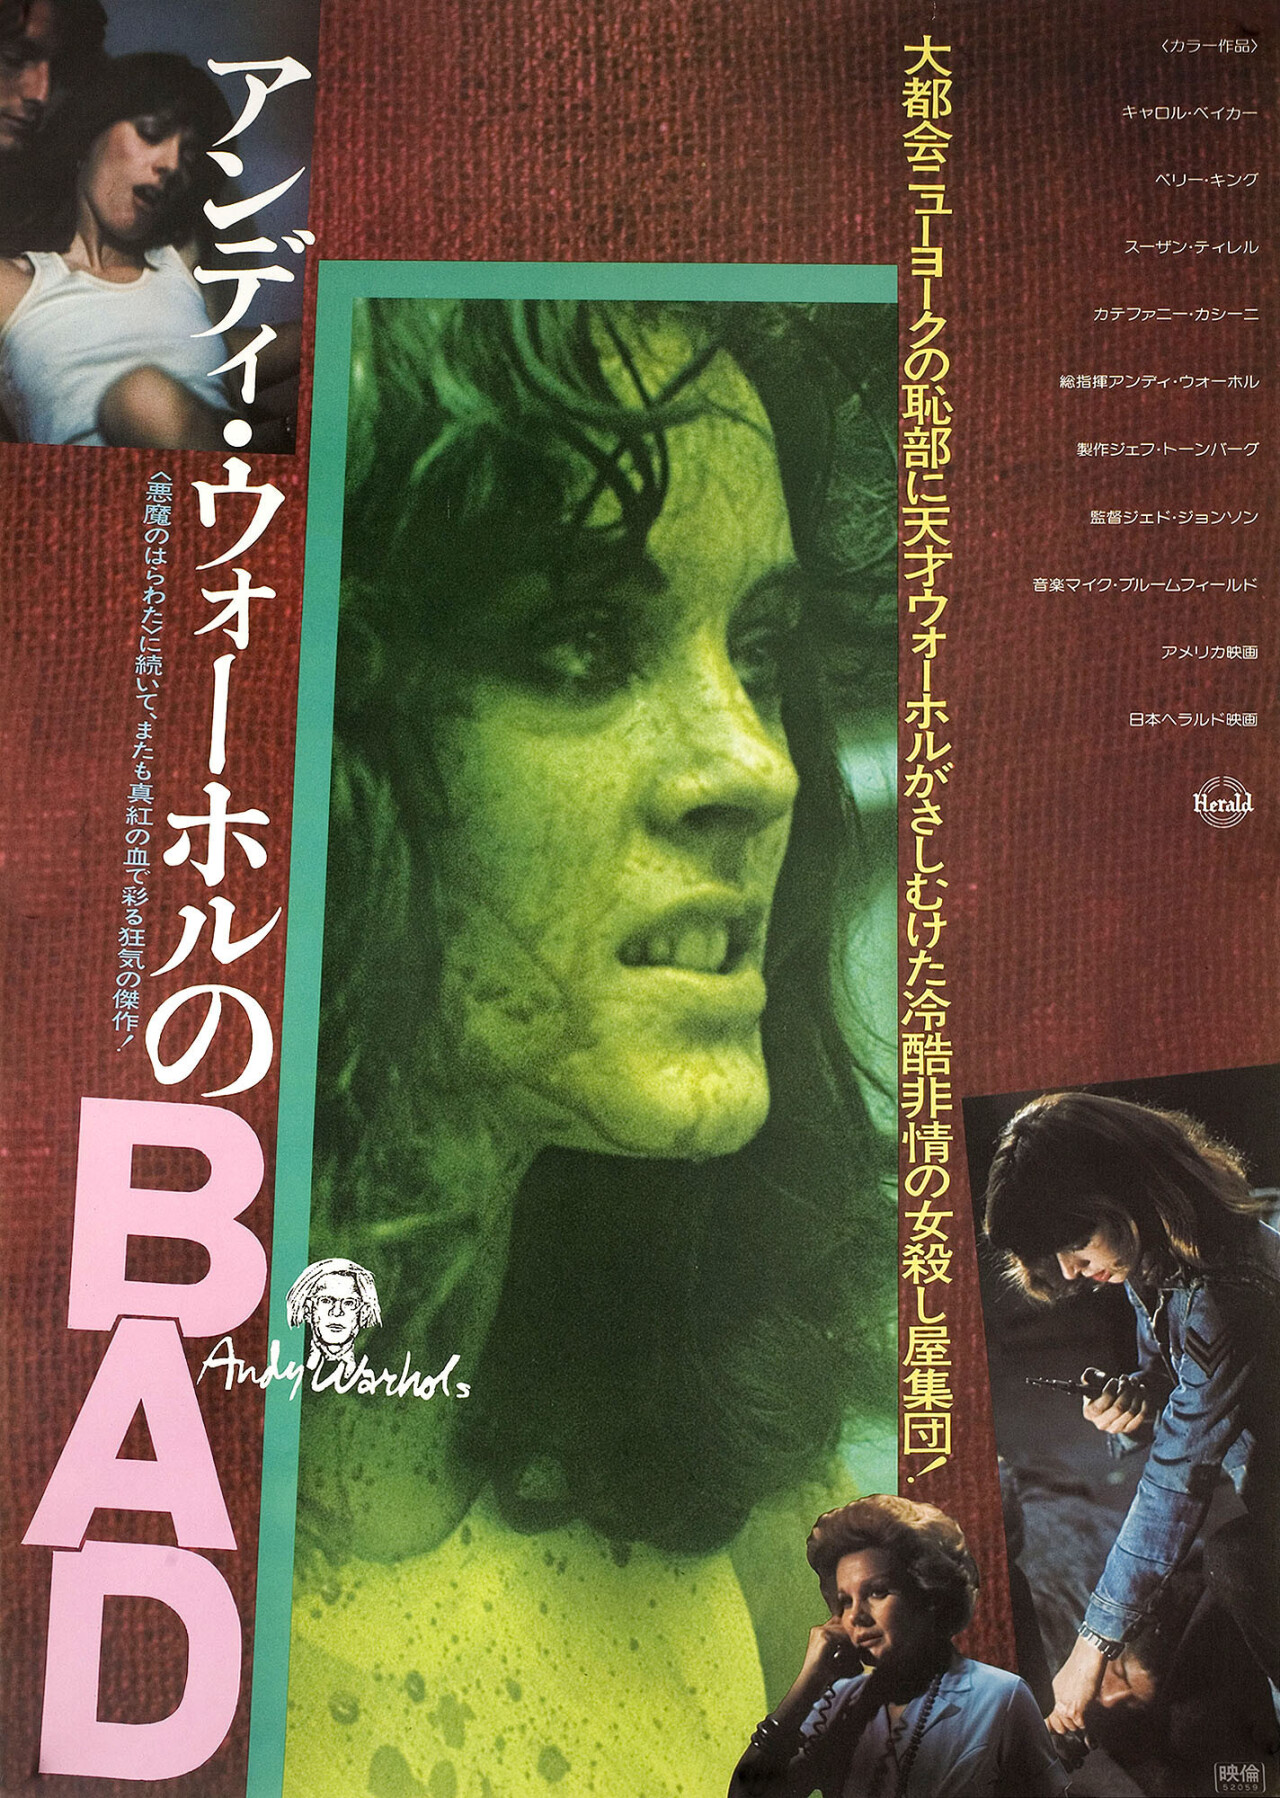 Плохой (Bad, 1977), режиссёр Джед Джонсон, японский постер к фильму (ужасы, 1977 год)